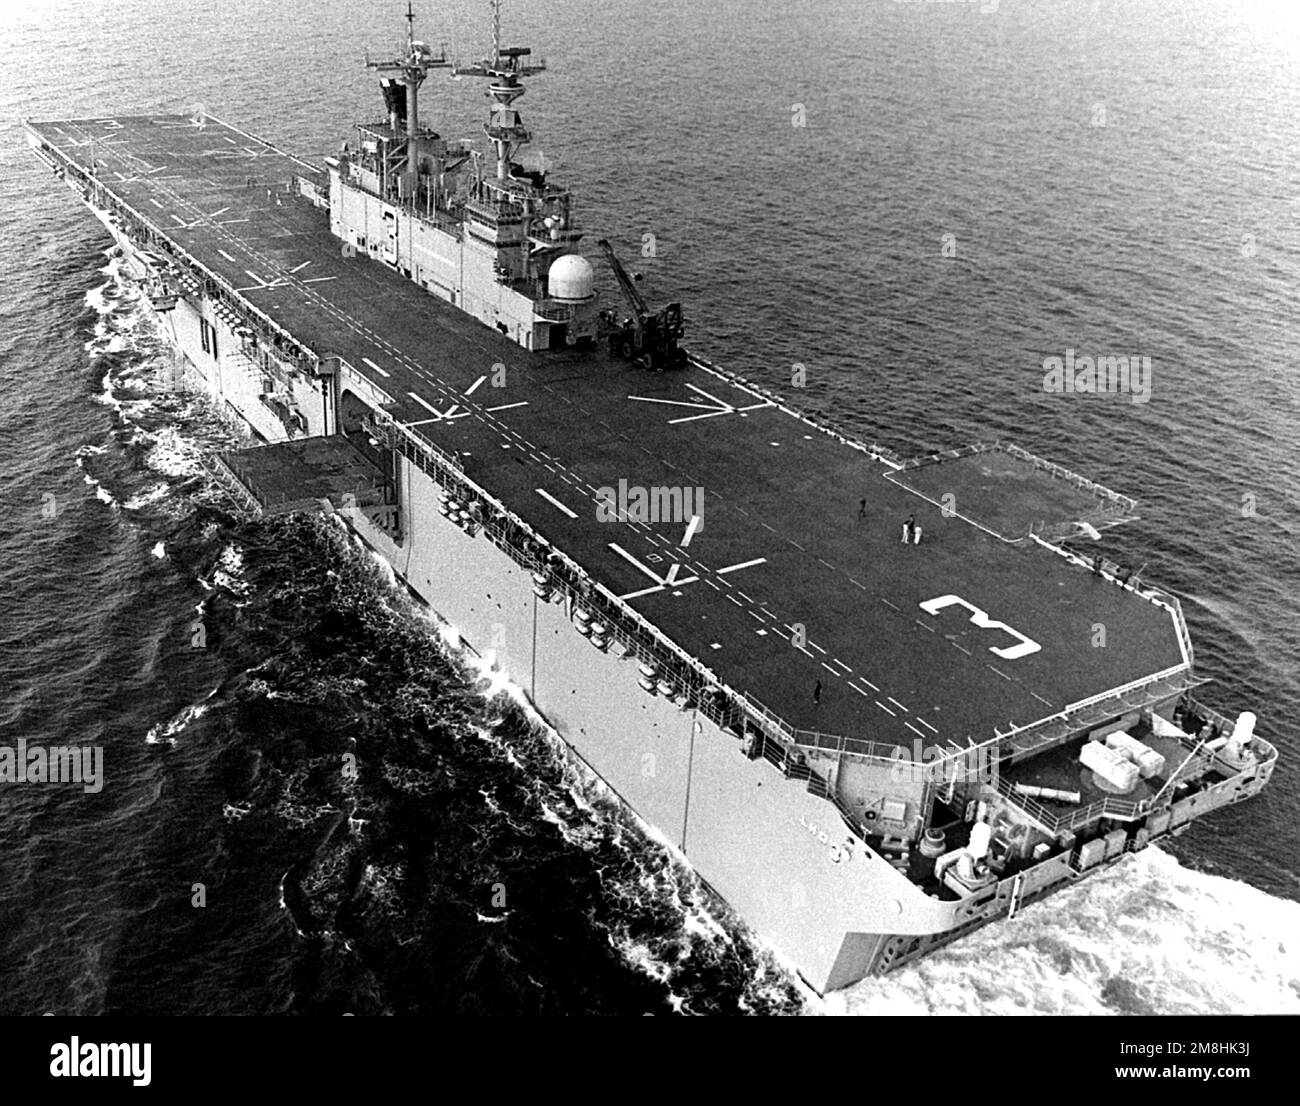 Vue en hauteur du quartier portuaire du navire d'assaut amphibie USS KEARSARGE (LHD-3) en cours d'essais en mer. Pays: Golfe du Mexique Banque D'Images